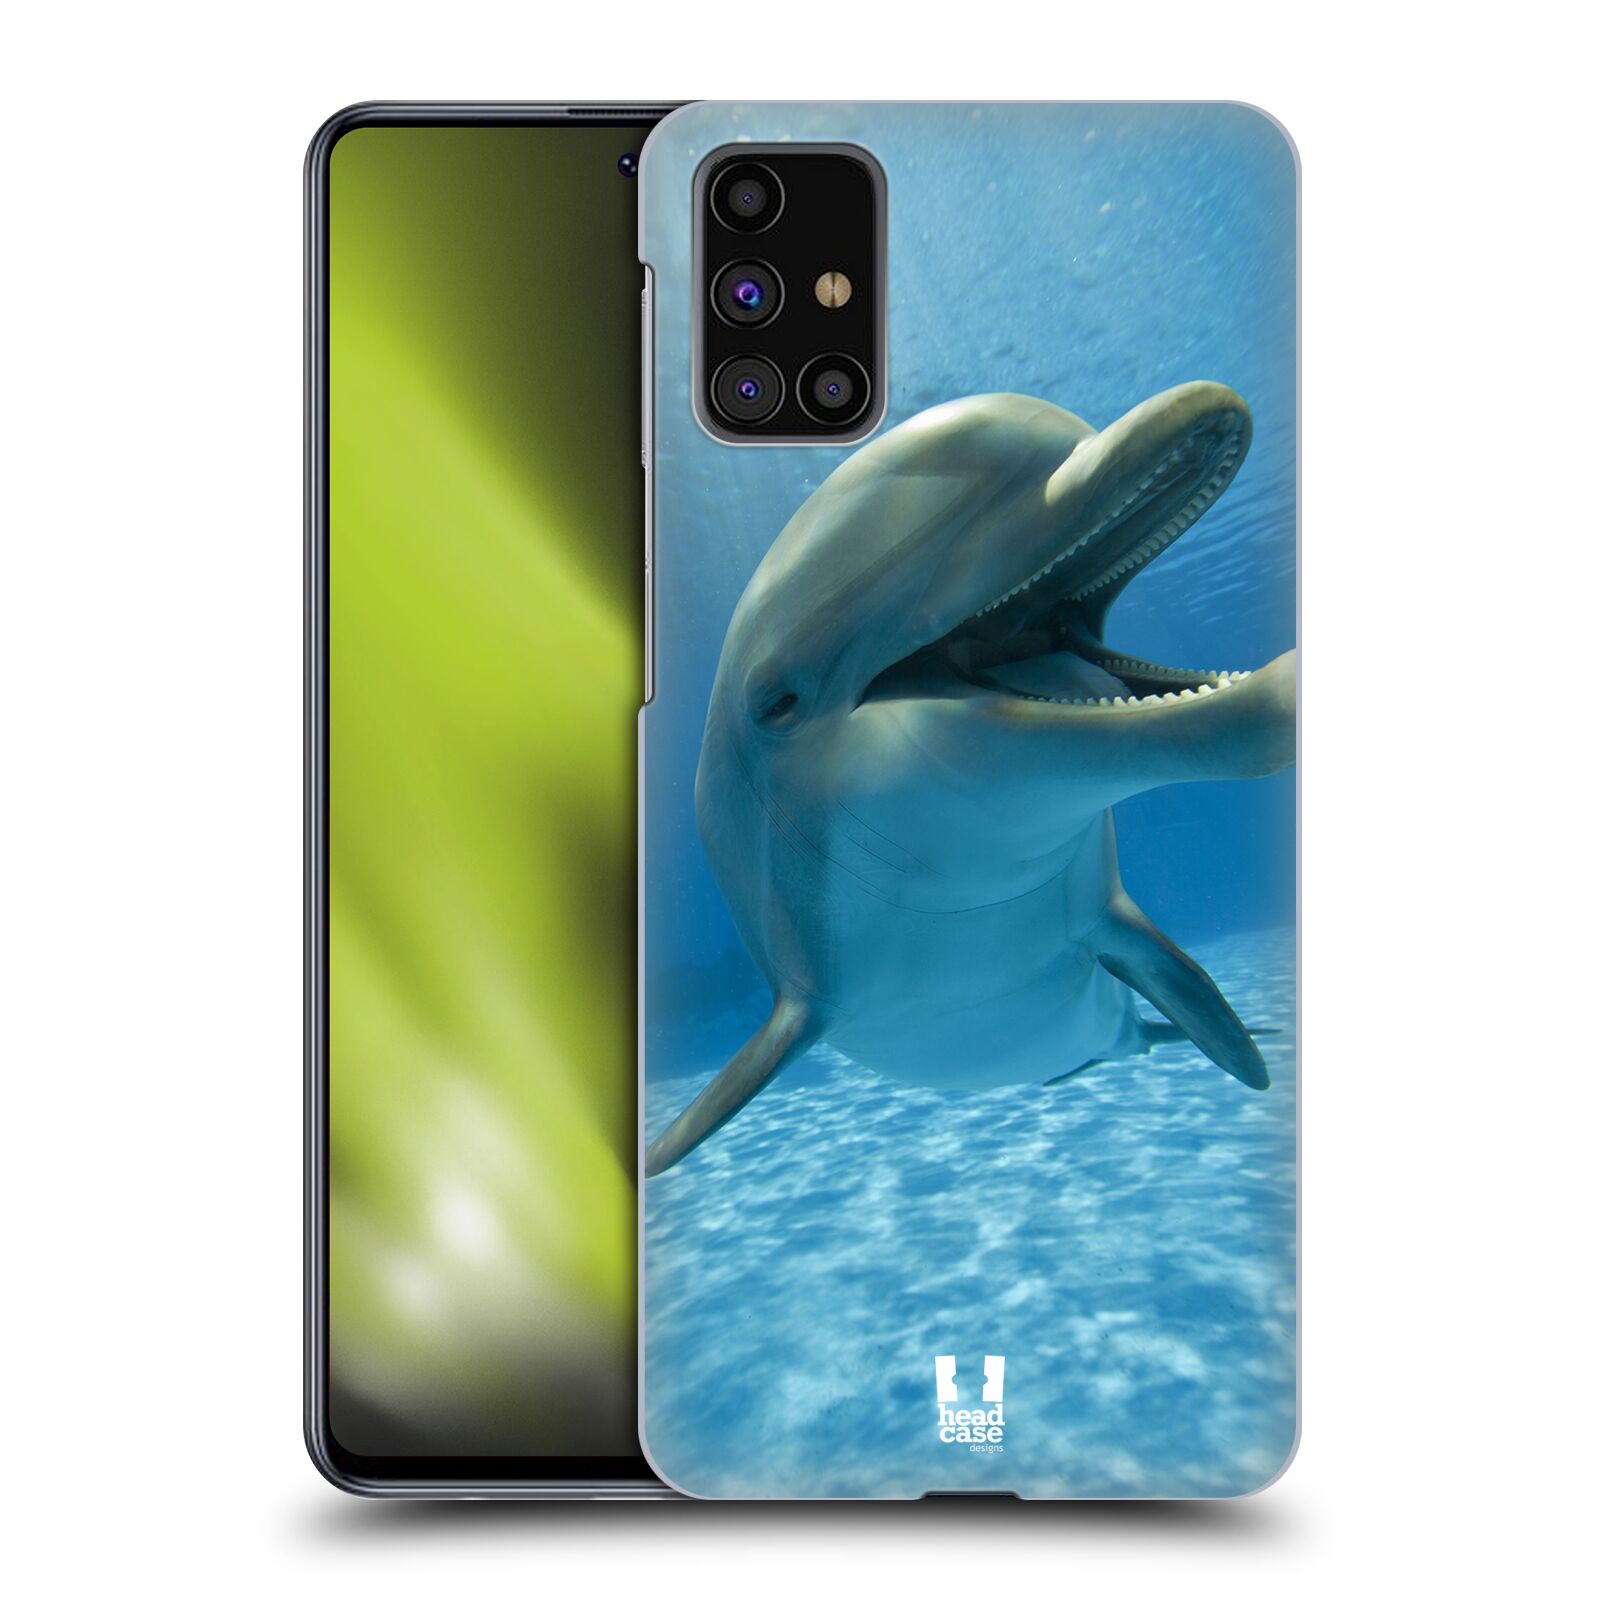 Zadní obal pro mobil Samsung Galaxy M31s - HEAD CASE - Svět zvířat delfín v moři